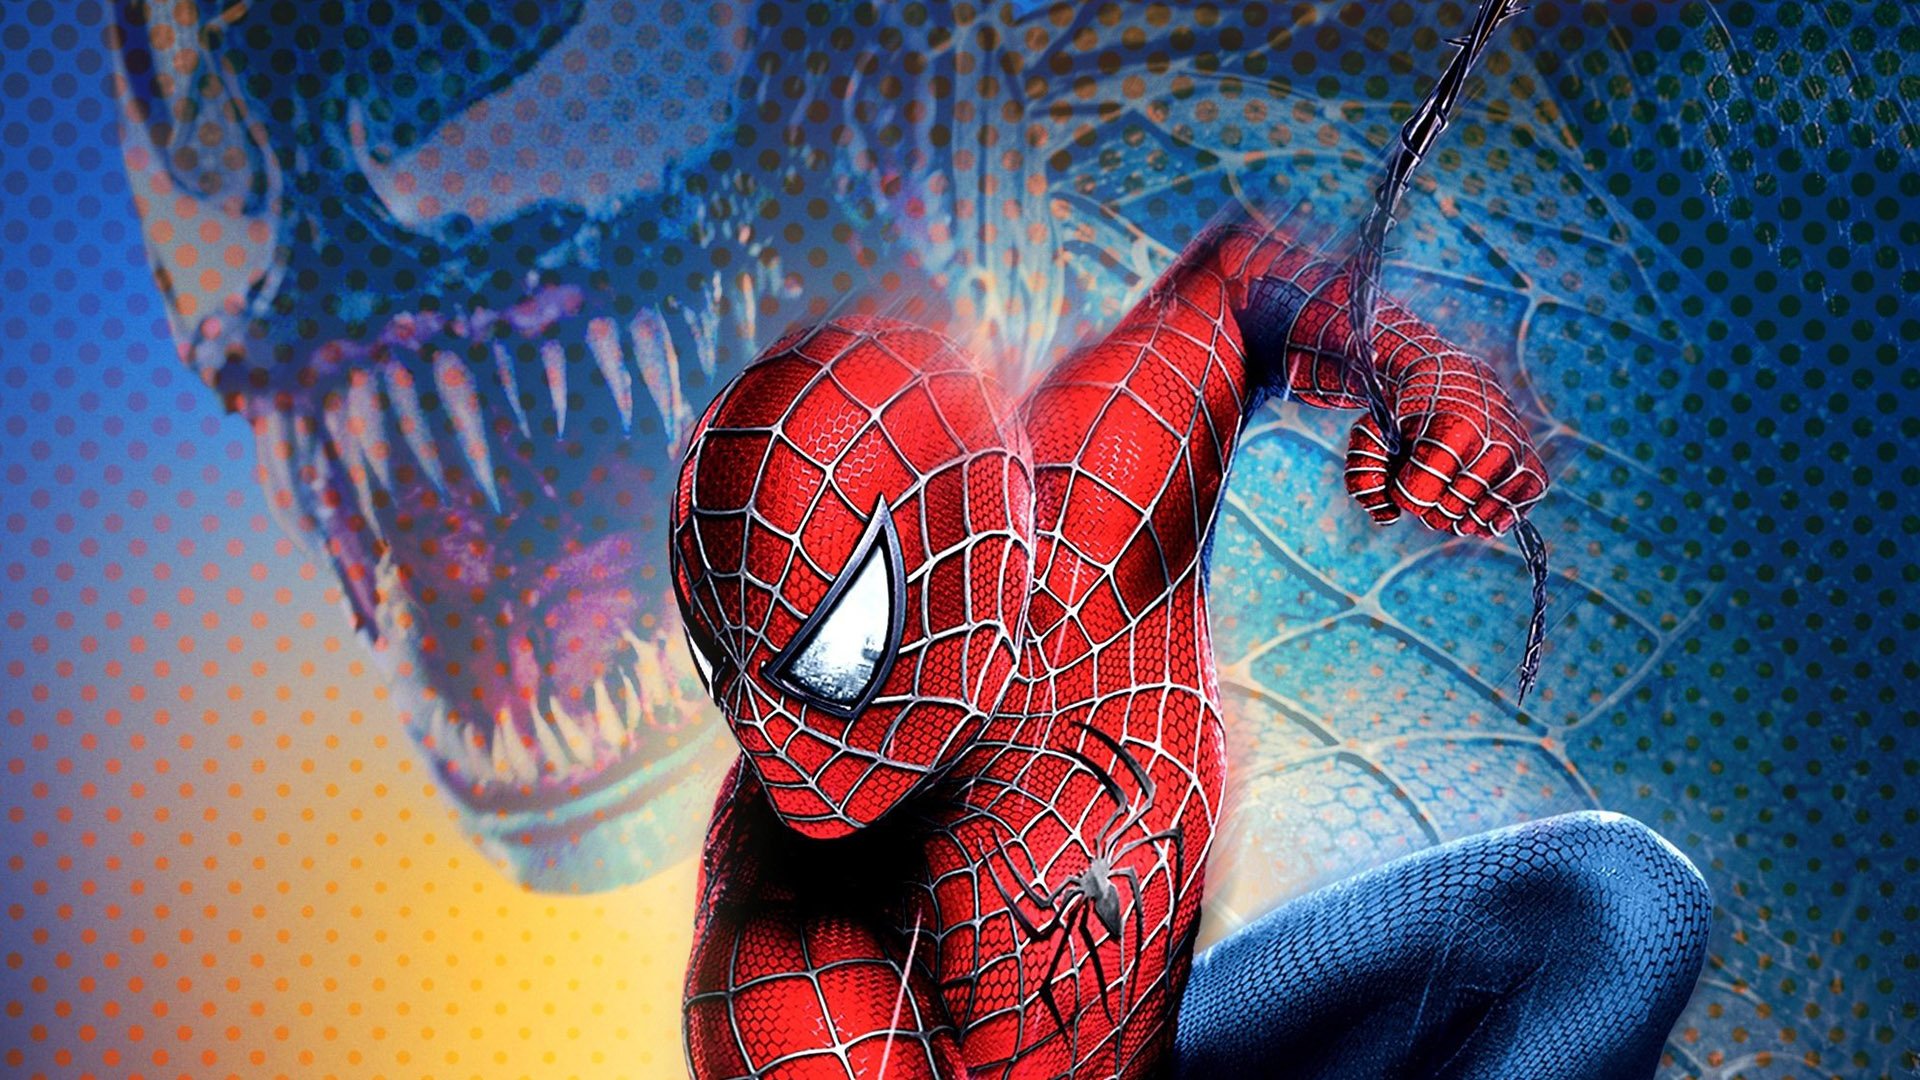 1920x1080 Spider-Man 3 Wallpaper Background Image. 